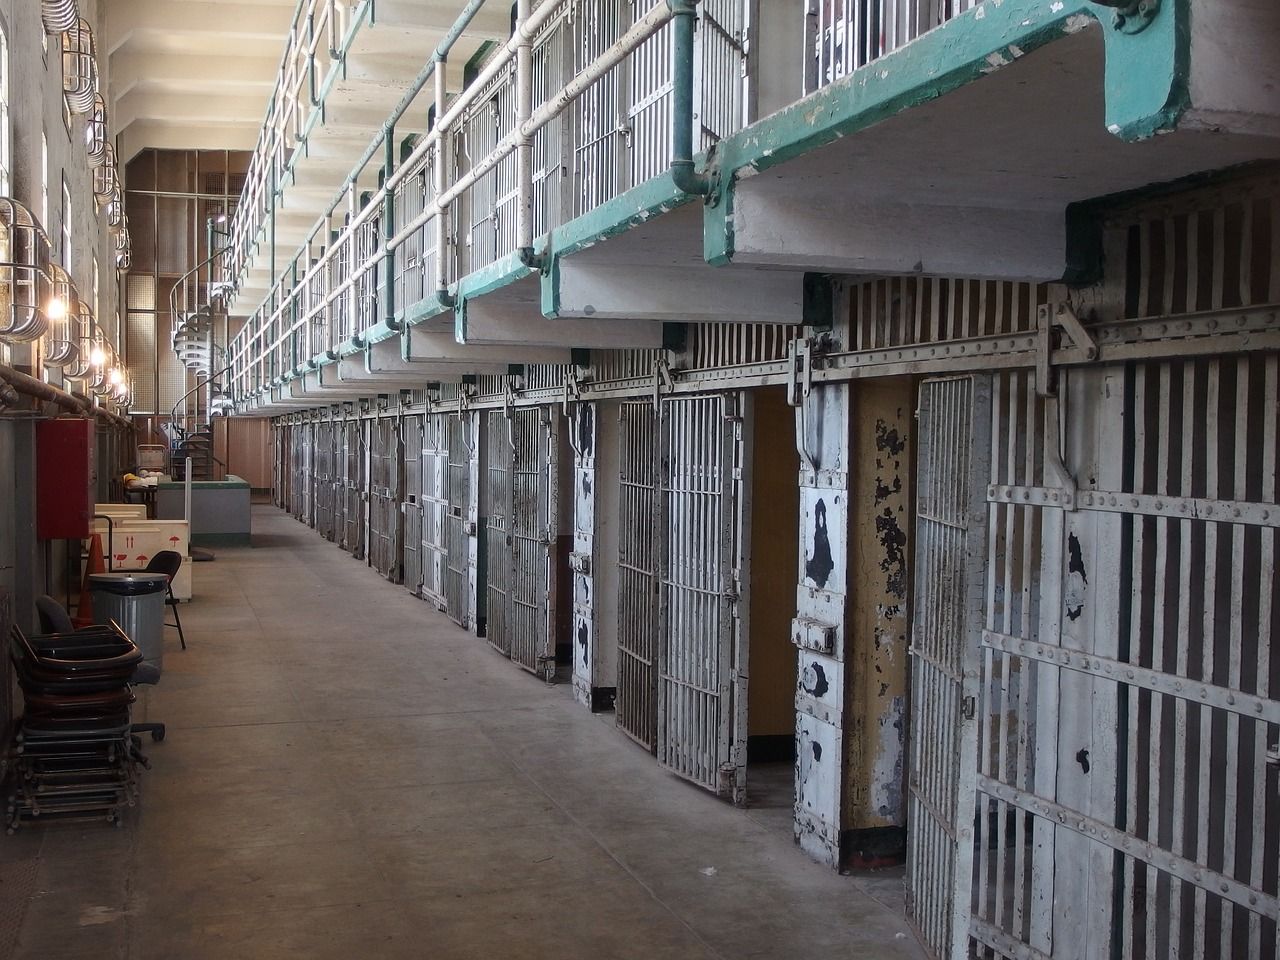 Popełnienie przestępstwa – czy jest szansa, żeby nie trafić do więzienia?